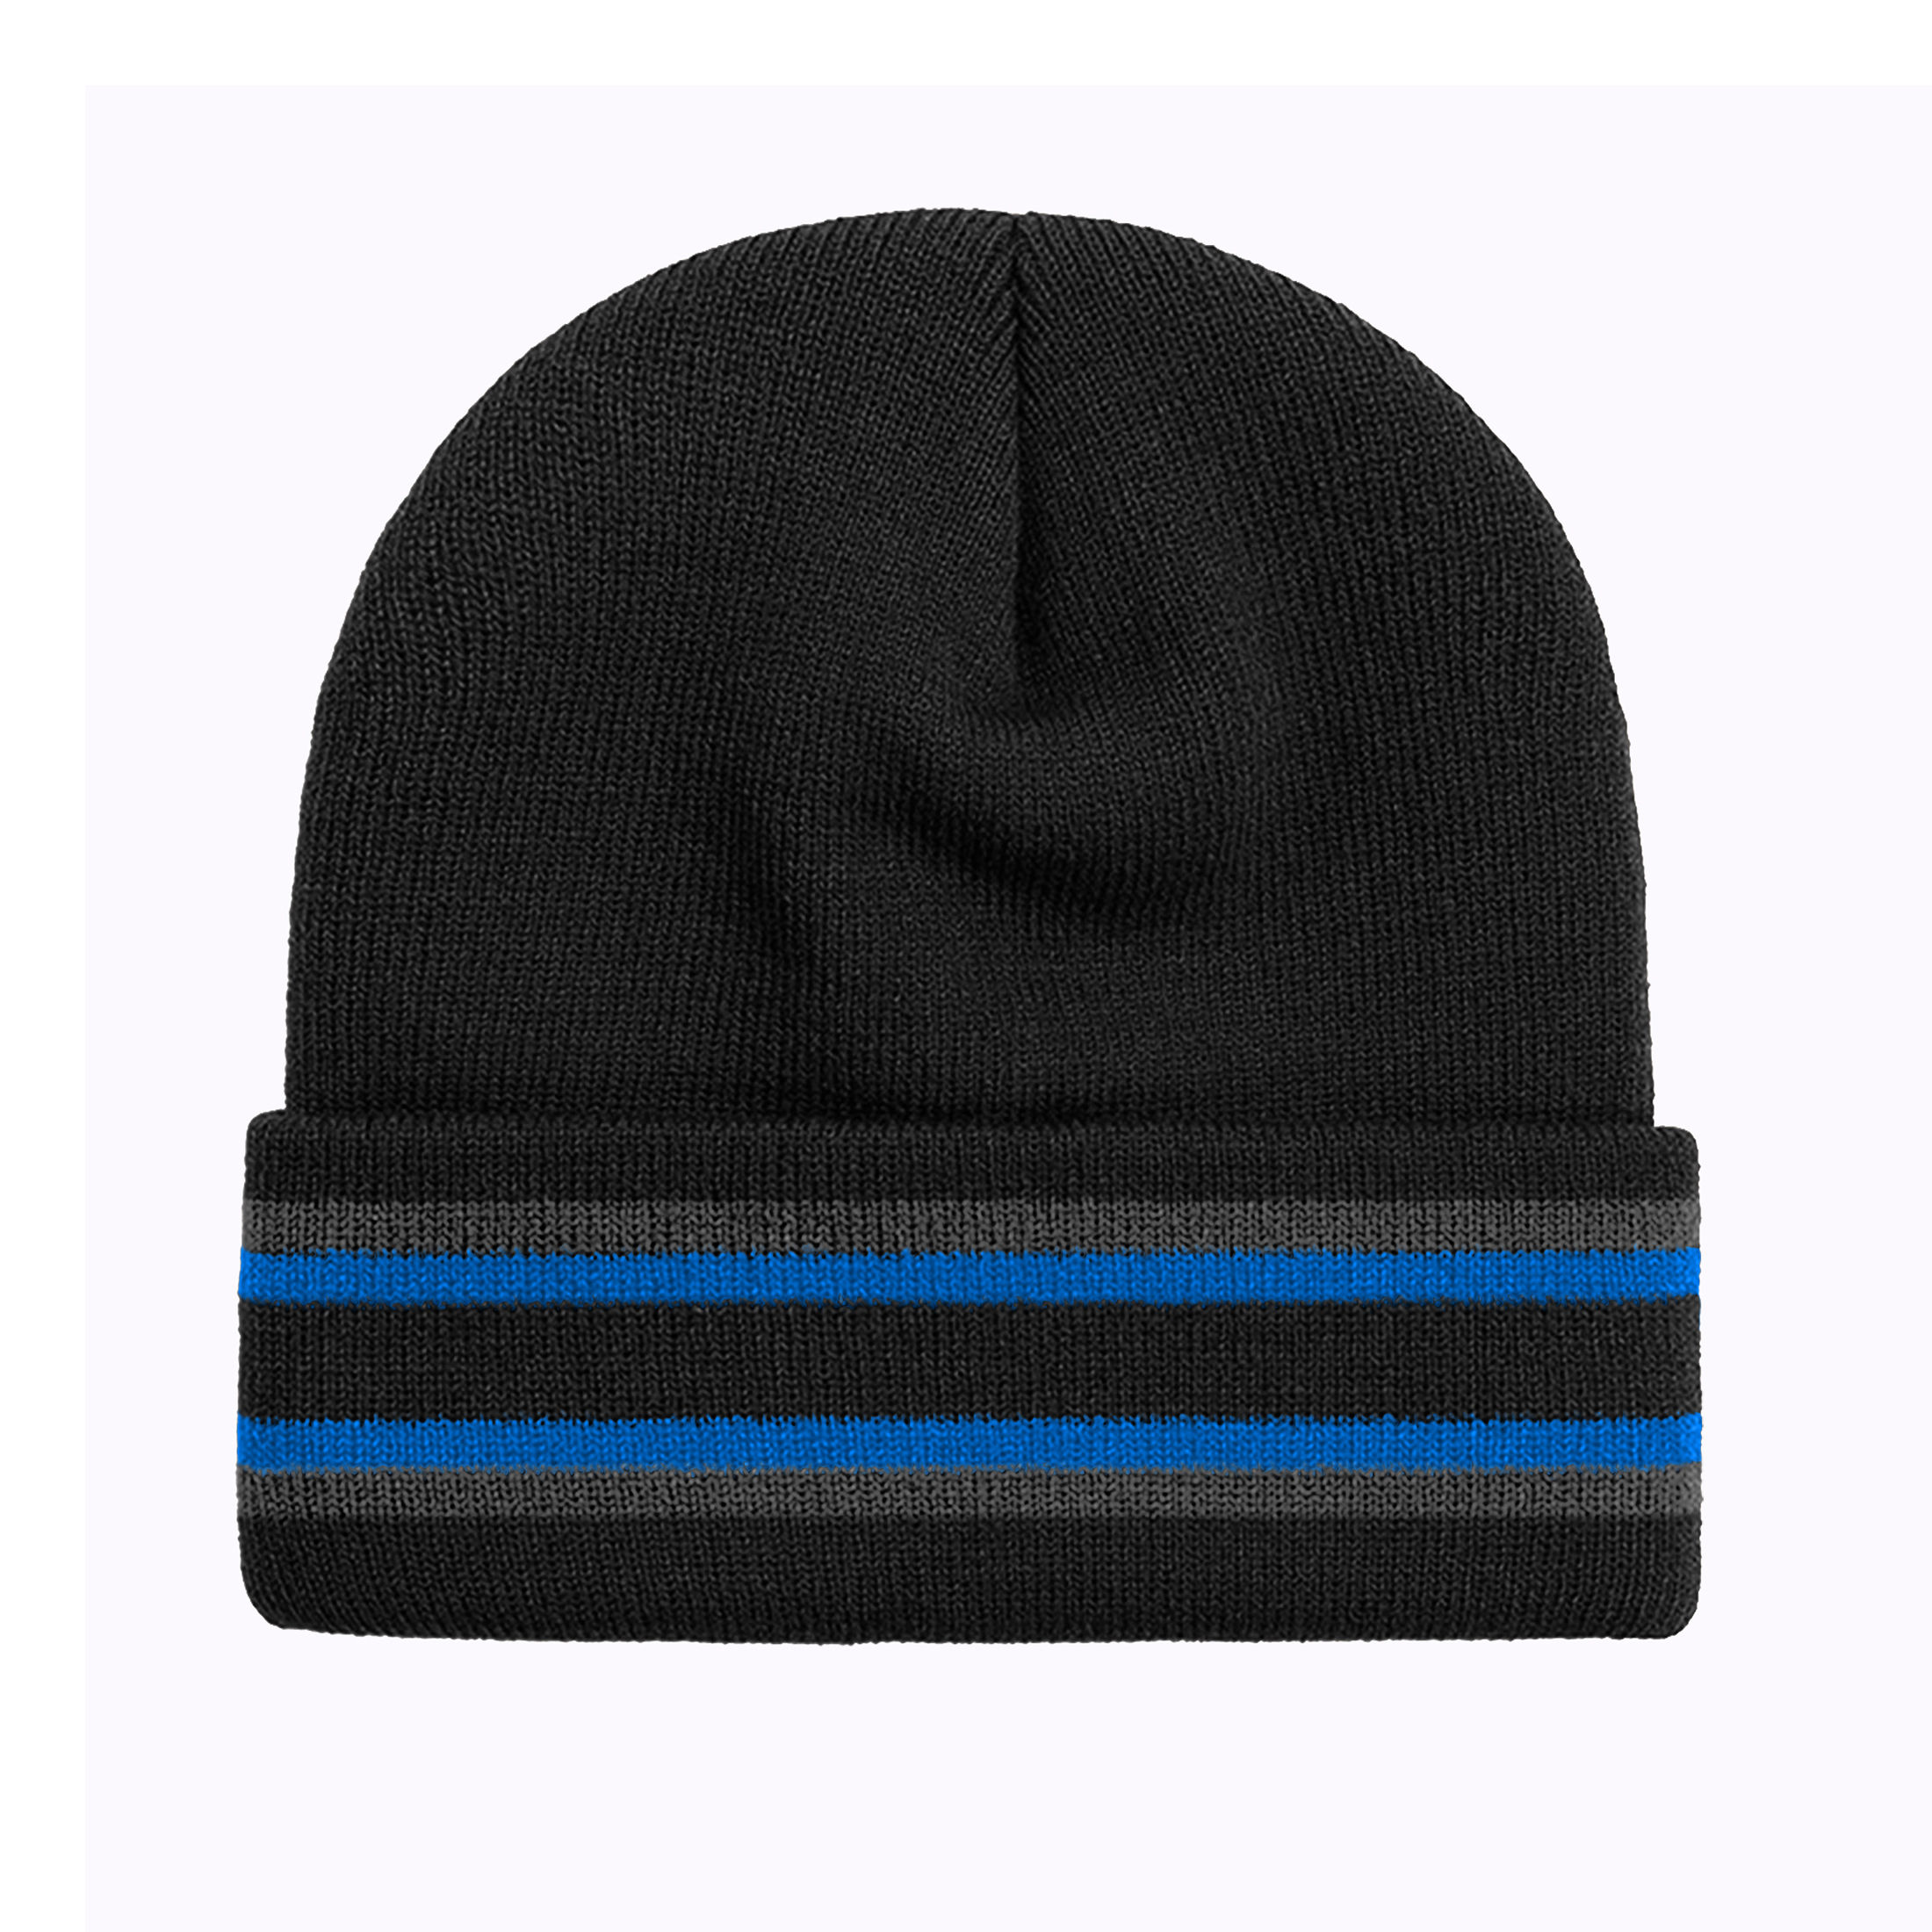 2-Pack: Men's Warm Knit Cuffed Cap Beanie Hat W/ Faux Fur Lining - Stripe